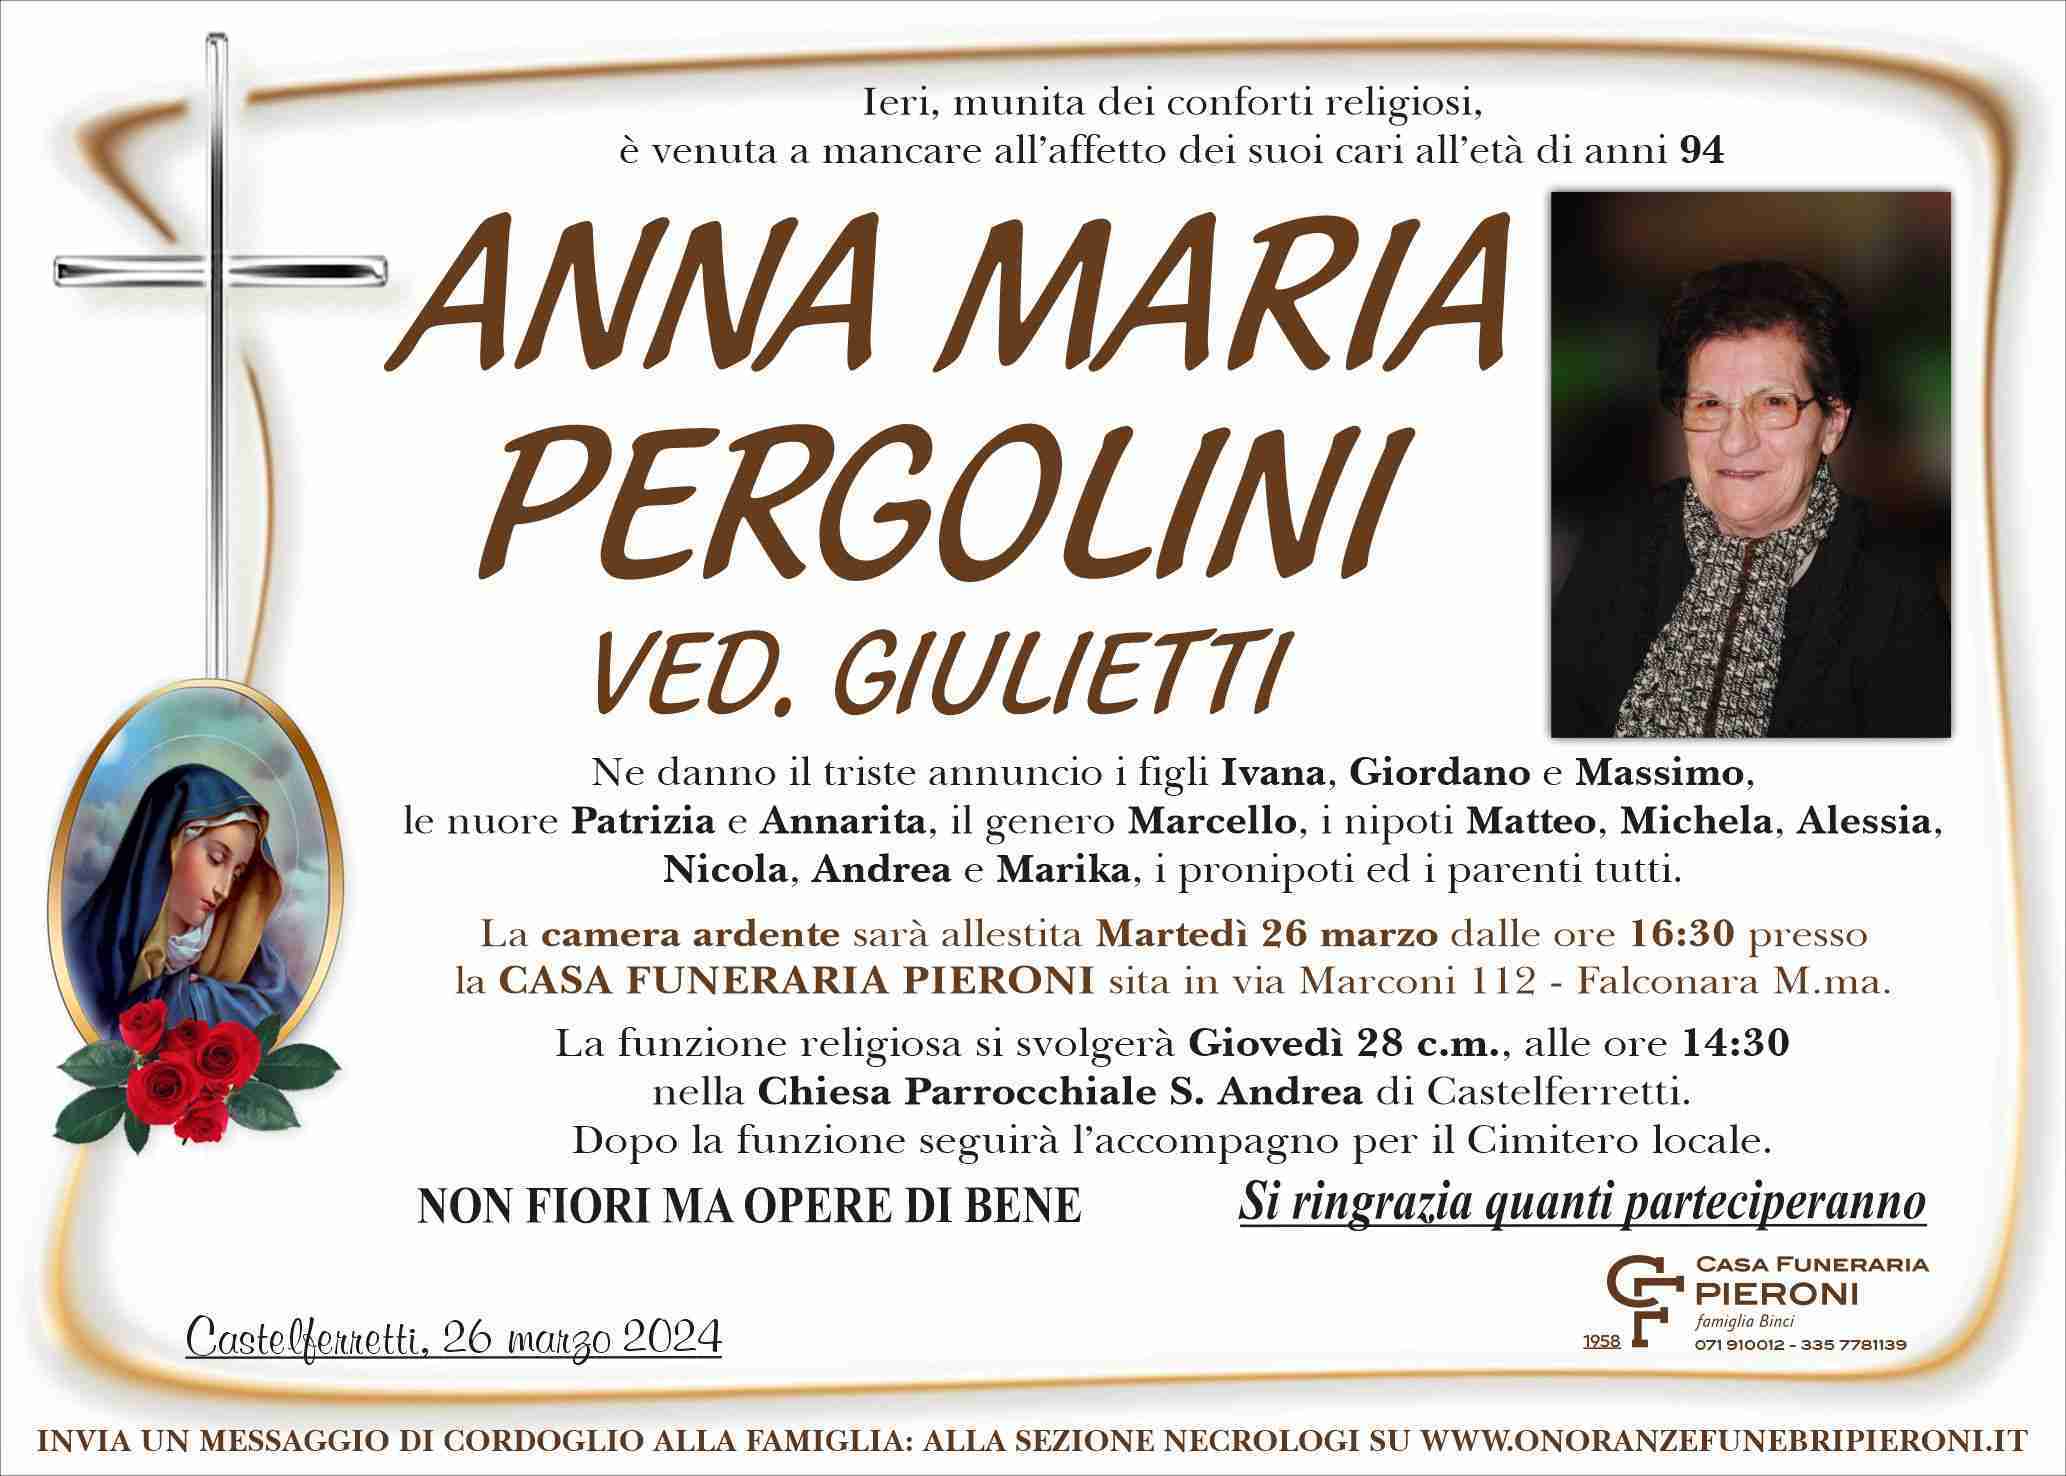 Anna Maria Pergolini